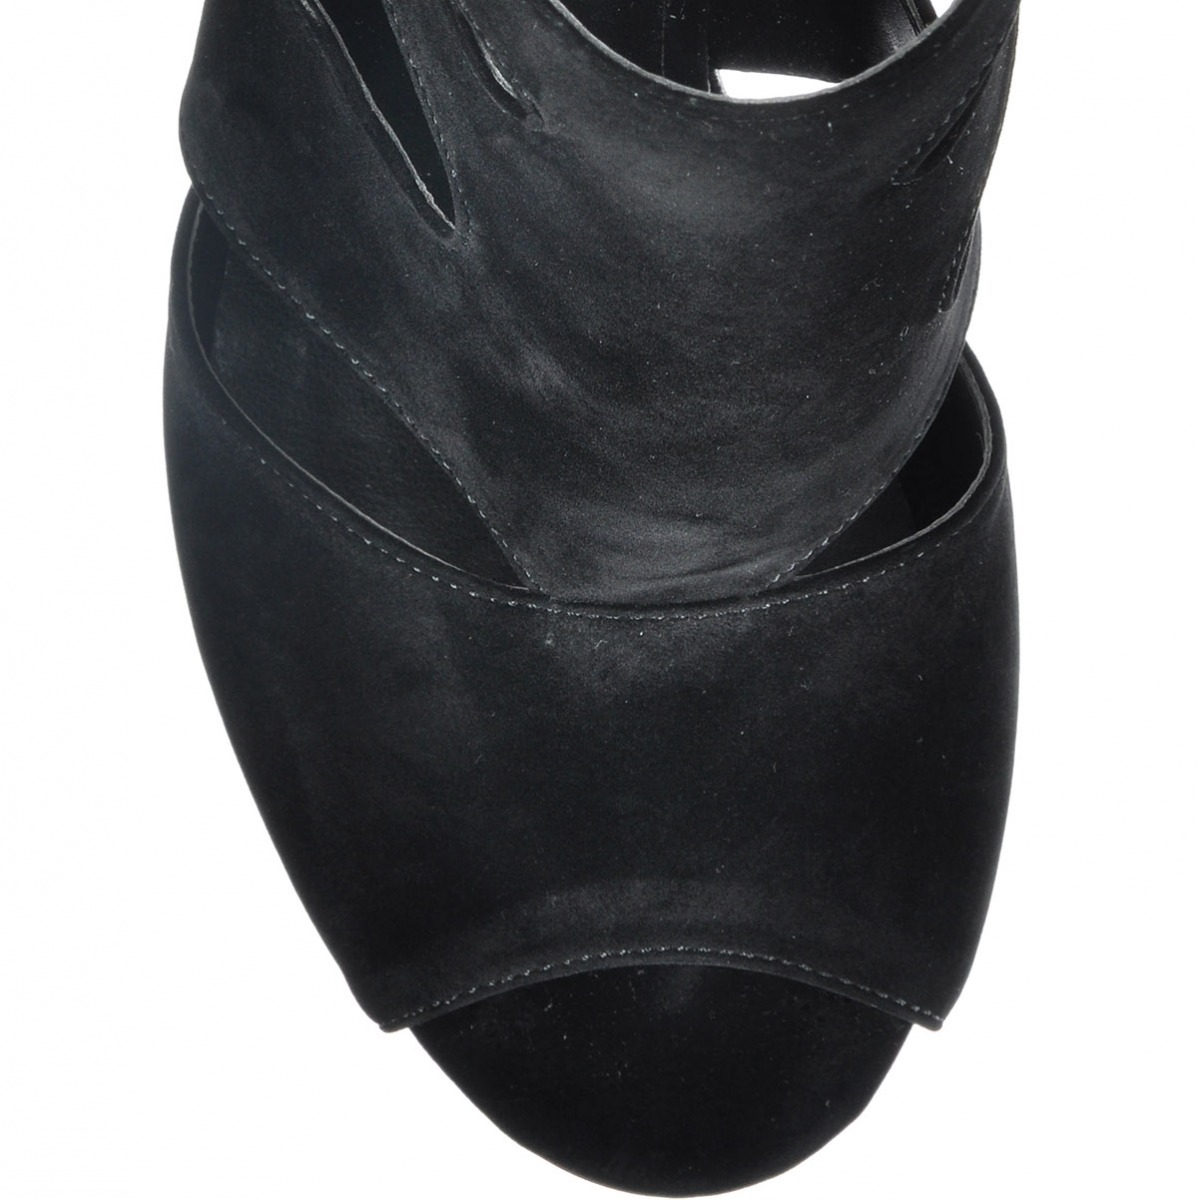 Flo Kadın  Siyah-Süet Klasik Topuklu Ayakkabı VZN-161Y. 5